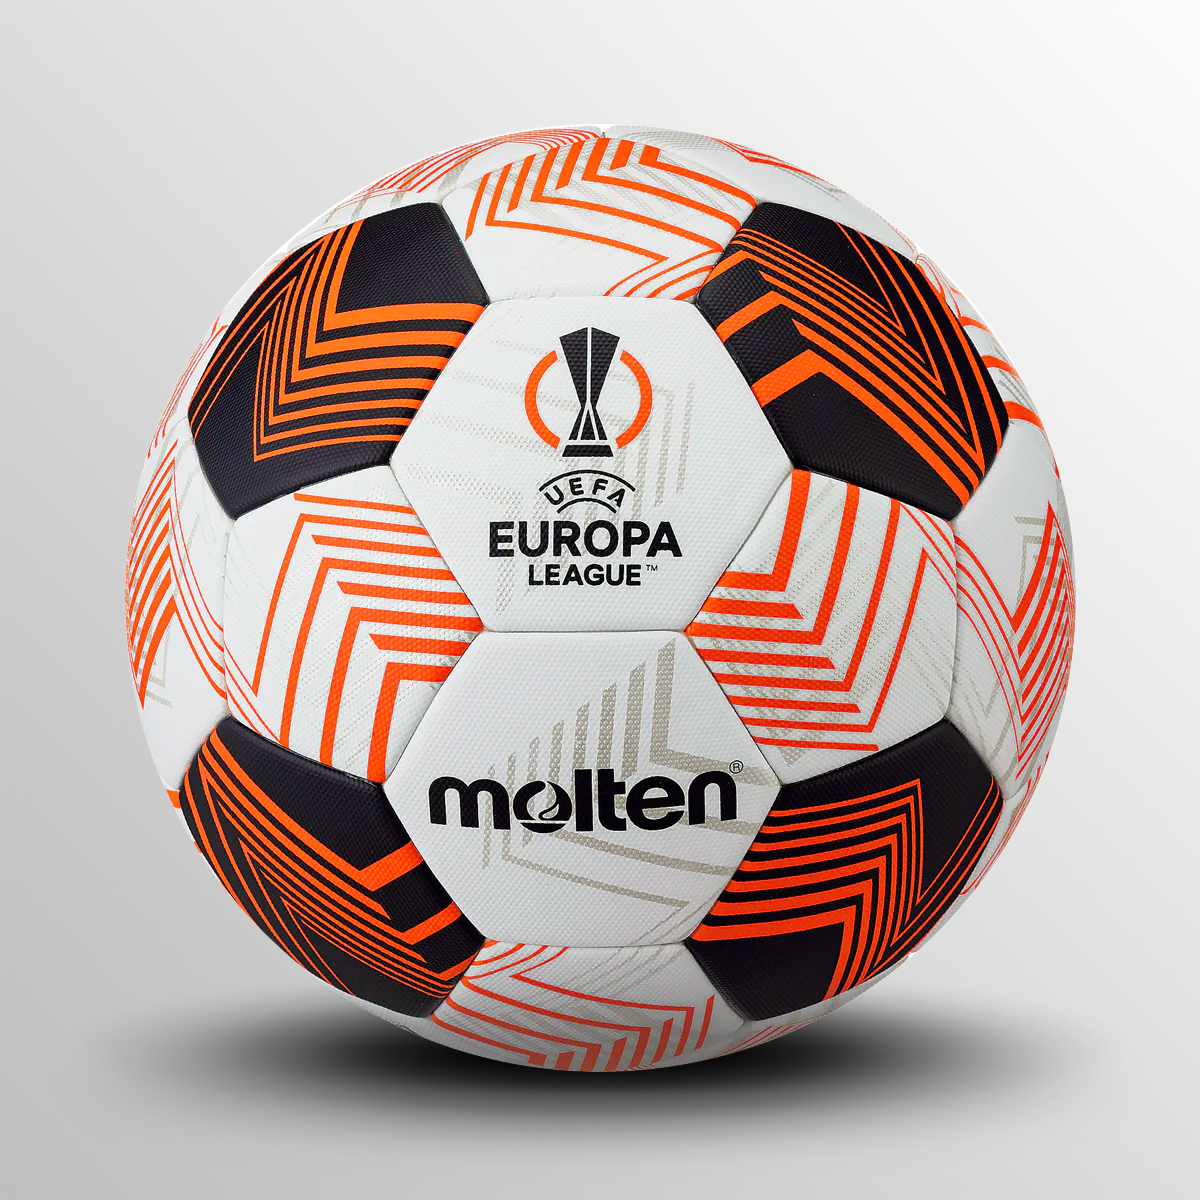 UEFA Europa League 23/24 Molten Offizieller Spielfußball